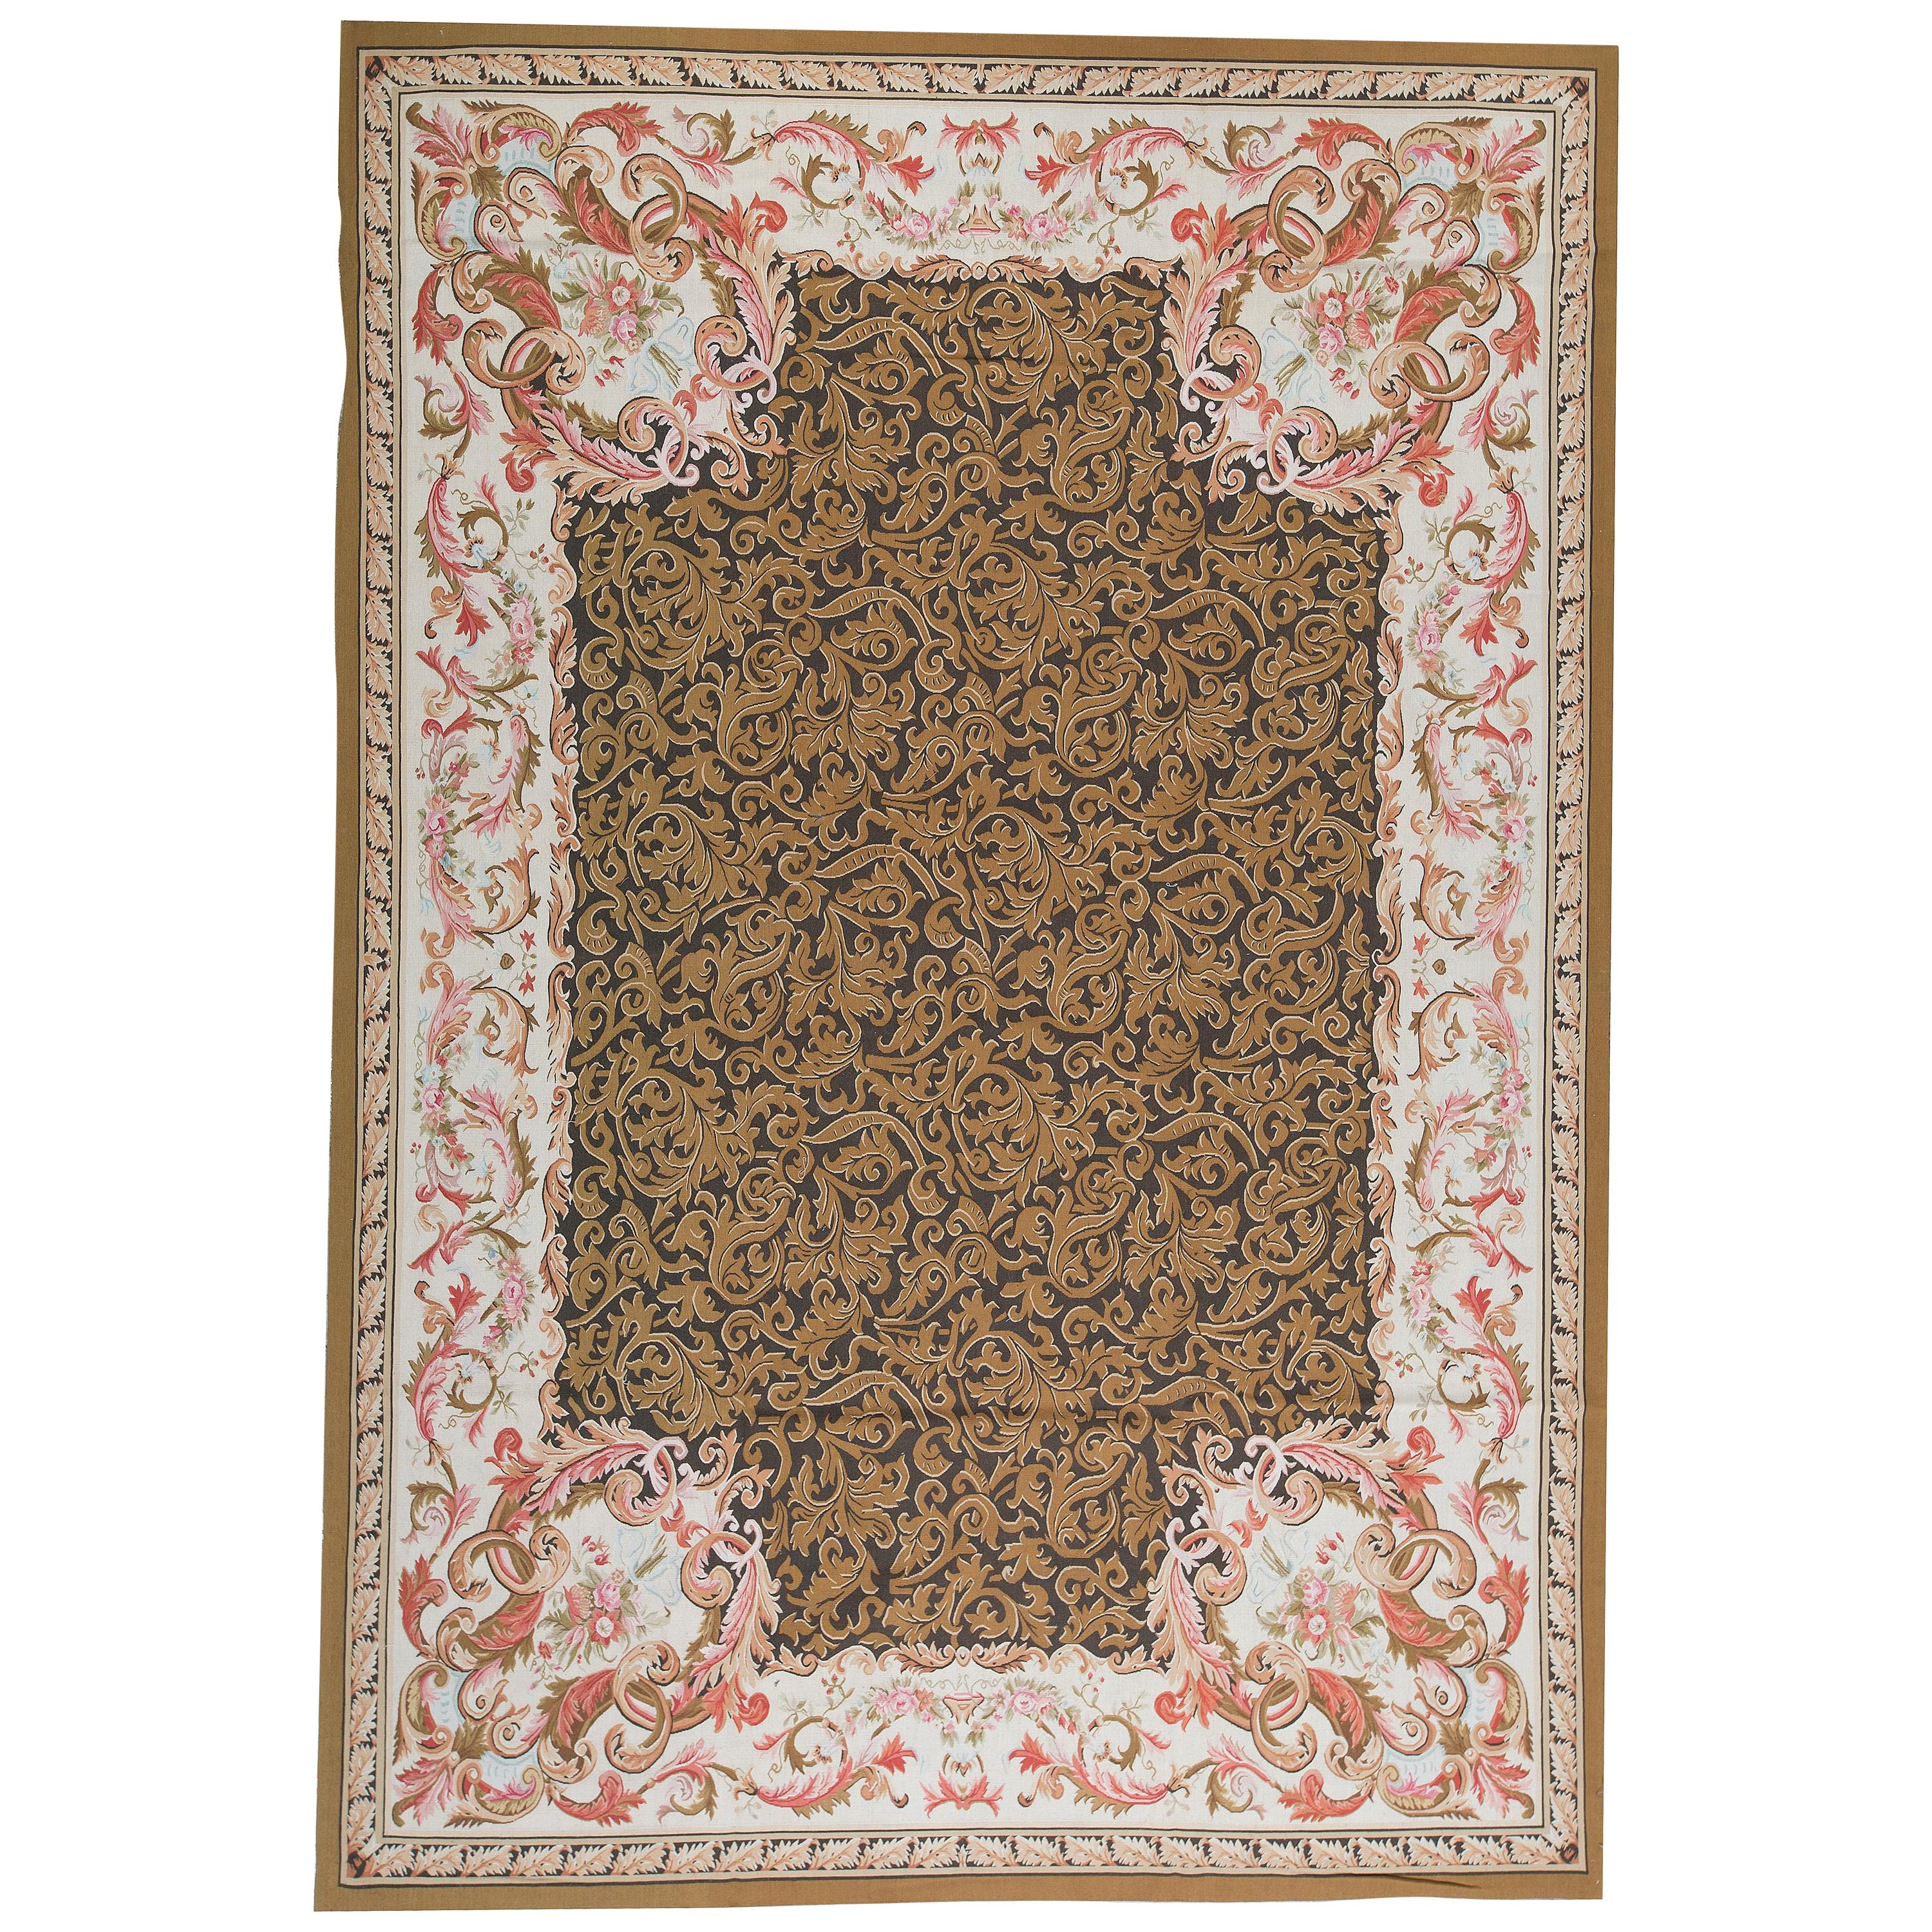 Traditioneller Flachgewebeteppich im französischen Aubusson-Stil aus dem 17. Jahrhundert